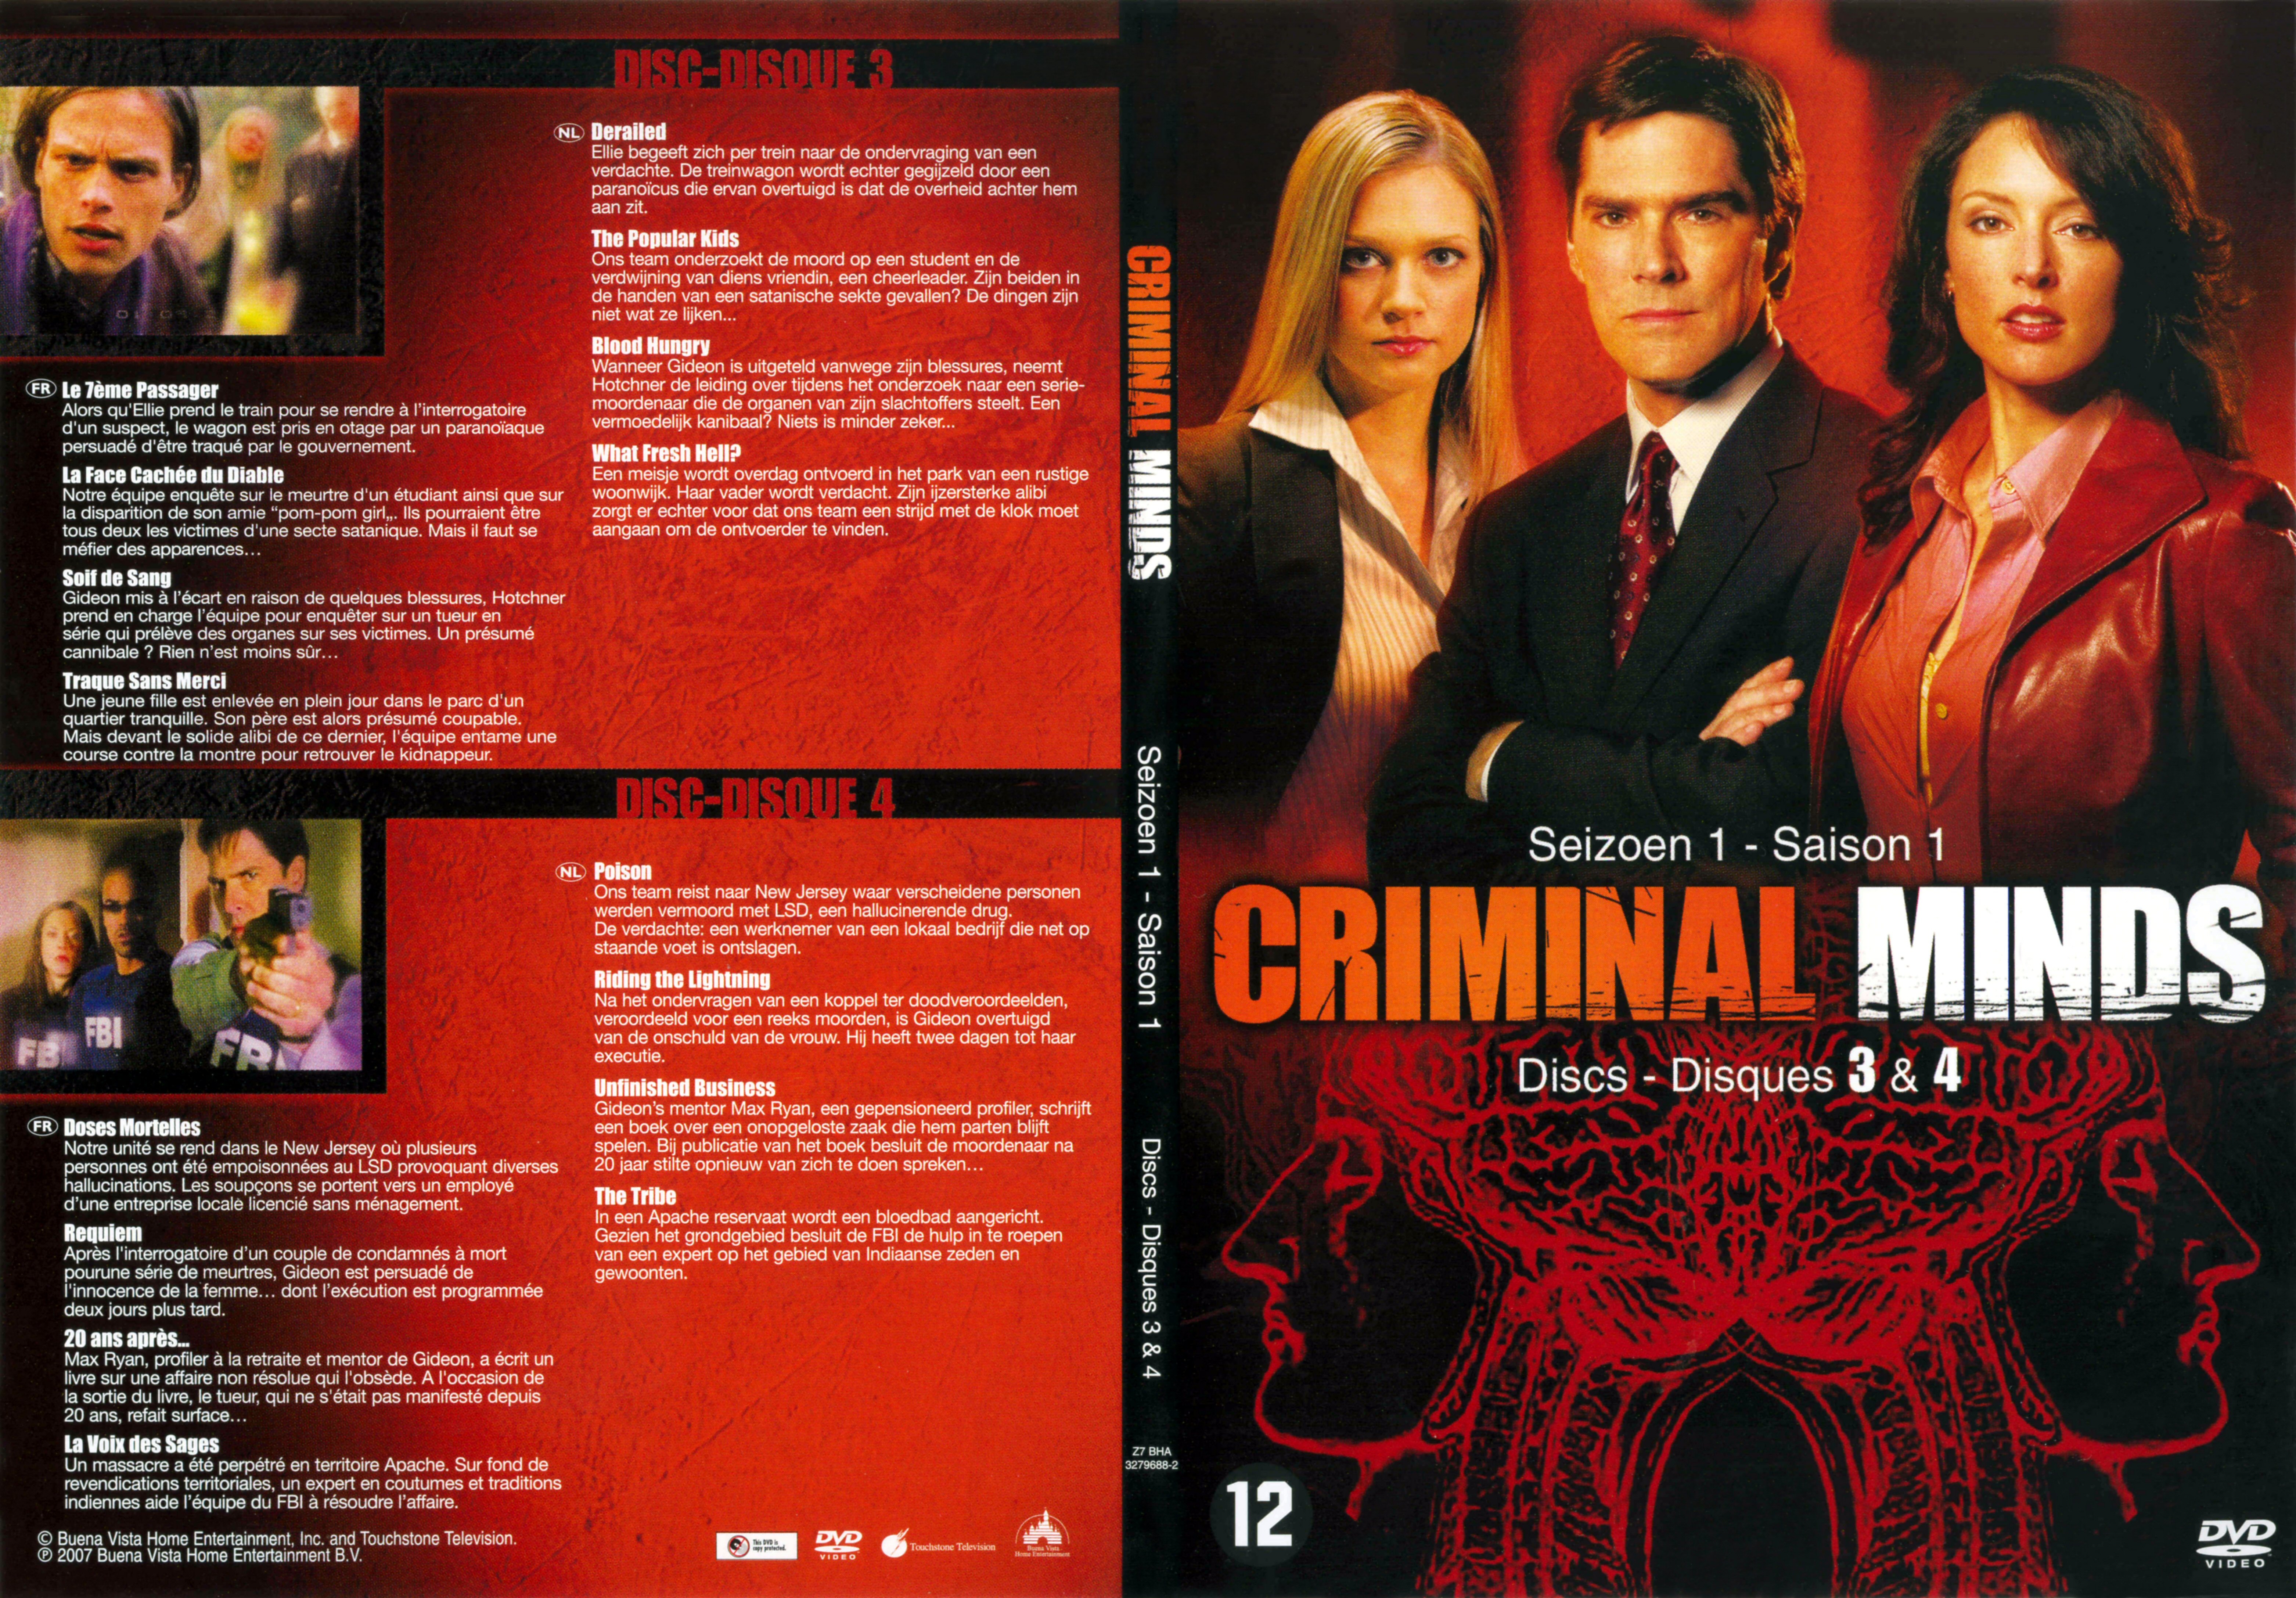 Jaquette DVD Criminal minds saison 1 DVD 2